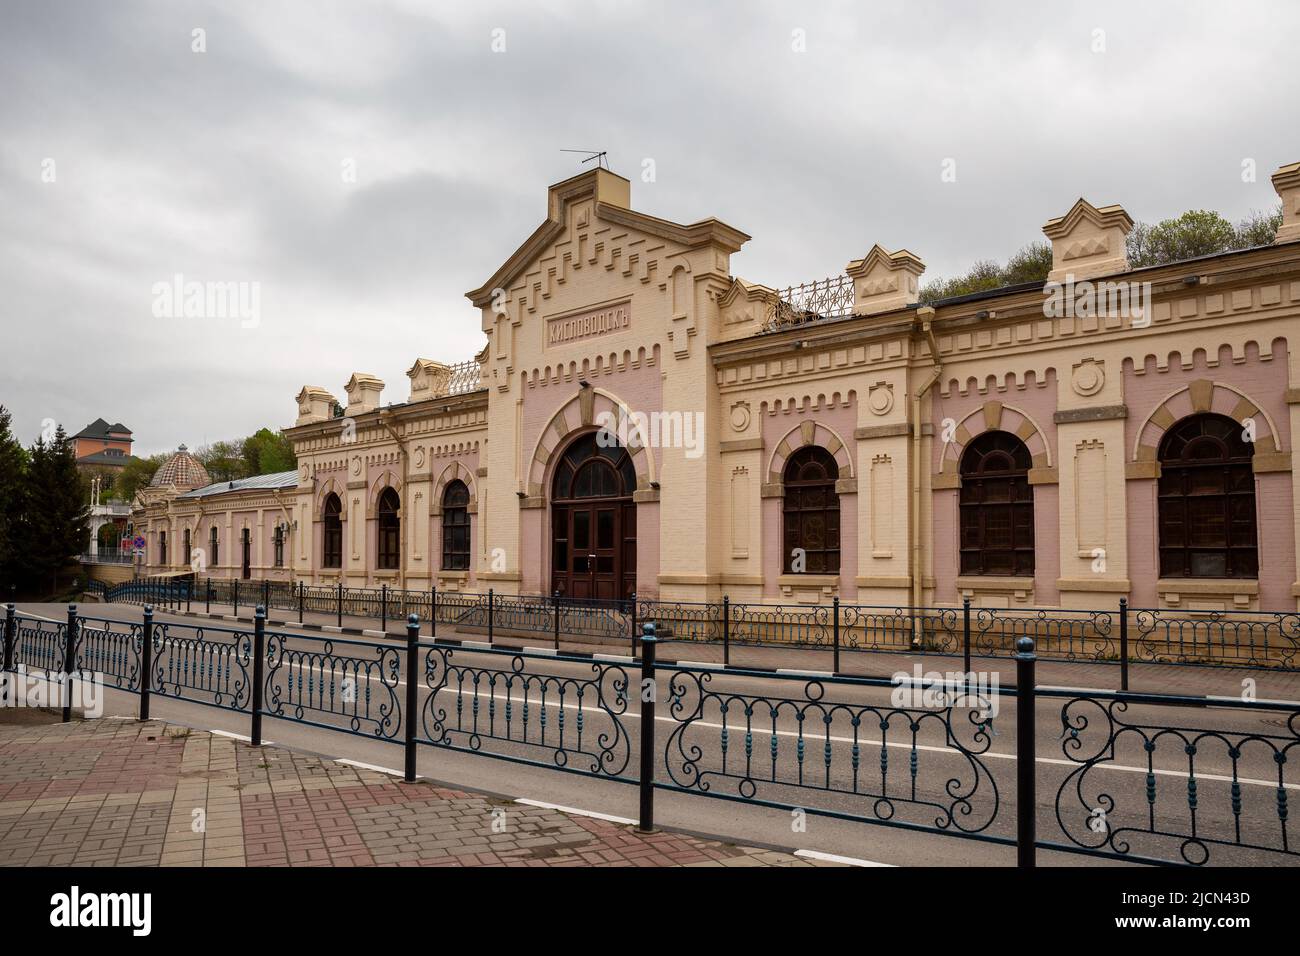 Estación ferroviaria de Kislovodsk, edificio histórico del siglo 19th en el centro de Kislovodsk, Rusia Foto de stock